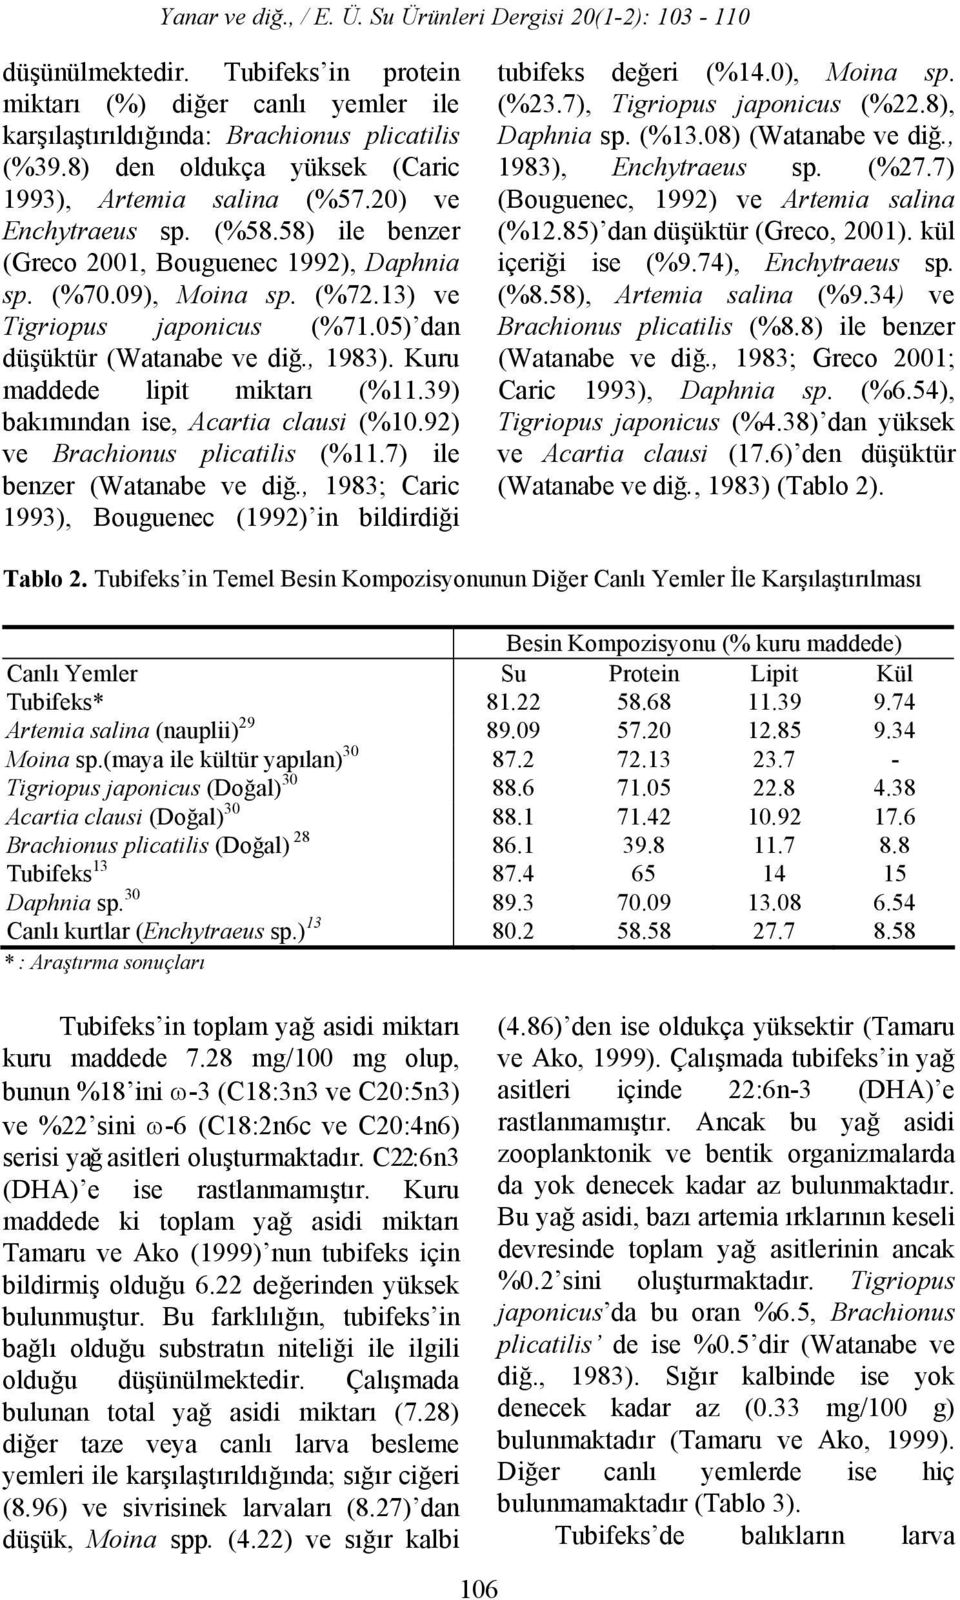 39) bakımından ise, Acartia clausi (%10.92) ve Brachionus plicatilis (%11.7) ile benzer (Watanabe ve diğ., 1983; Caric 1993), Bouguenec (1992) in bildirdiği tubifeks değeri (%14.0), Moina sp. (%23.